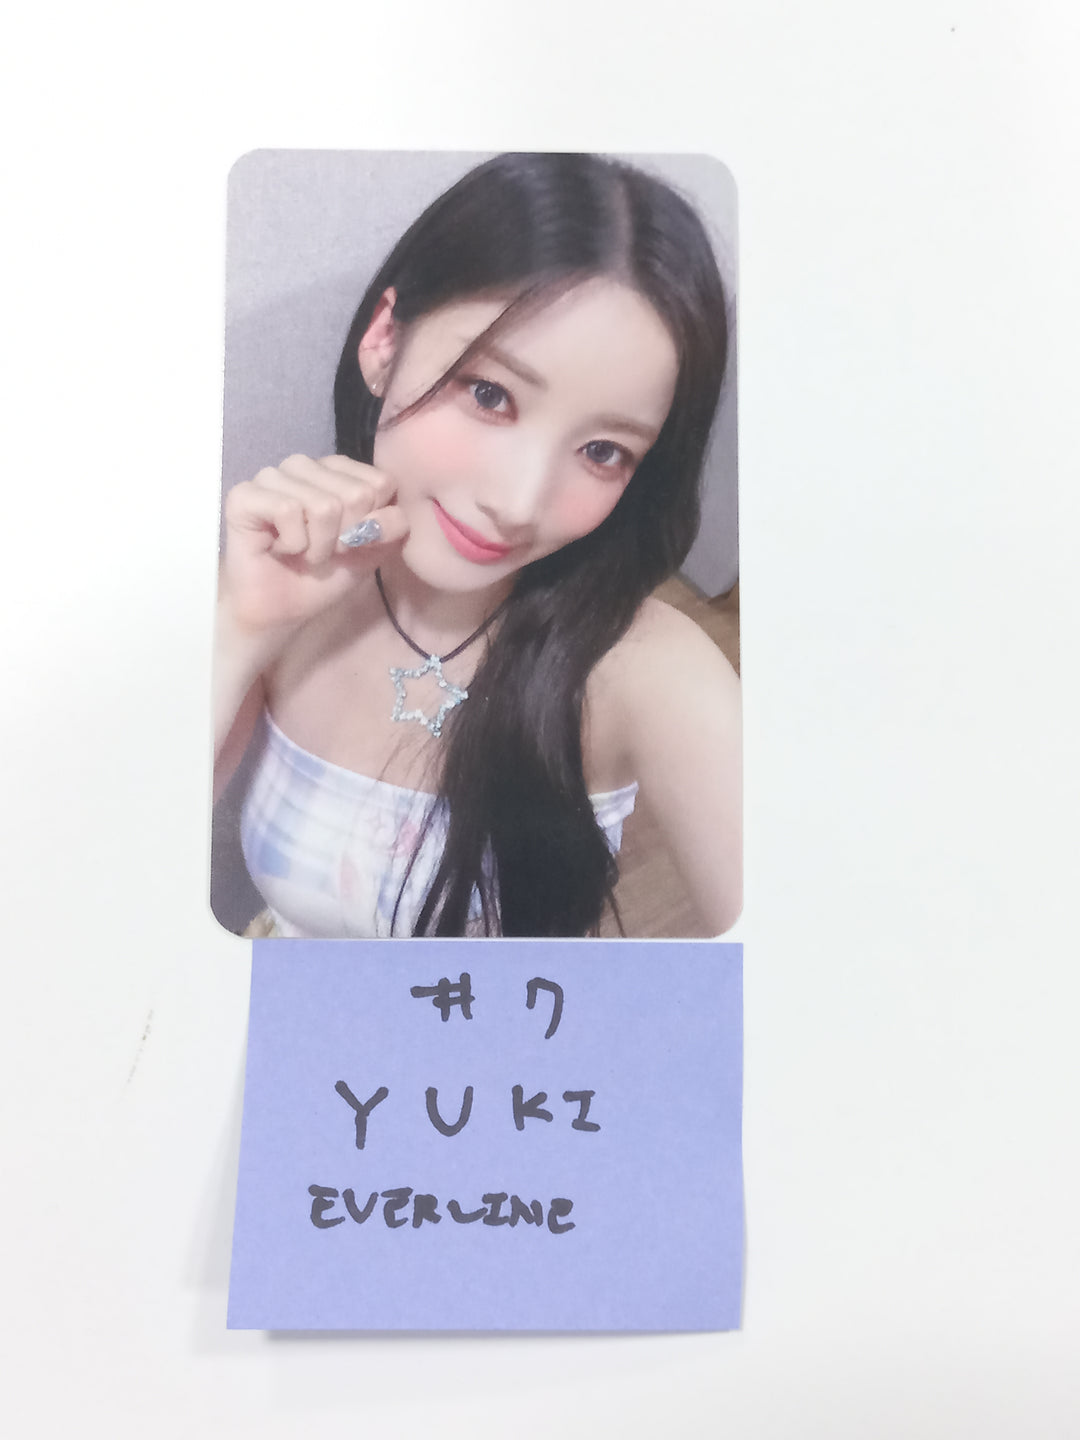 EL7Z U+P "7+UP" - Everline Fansign Event Photocard [23.10.11]